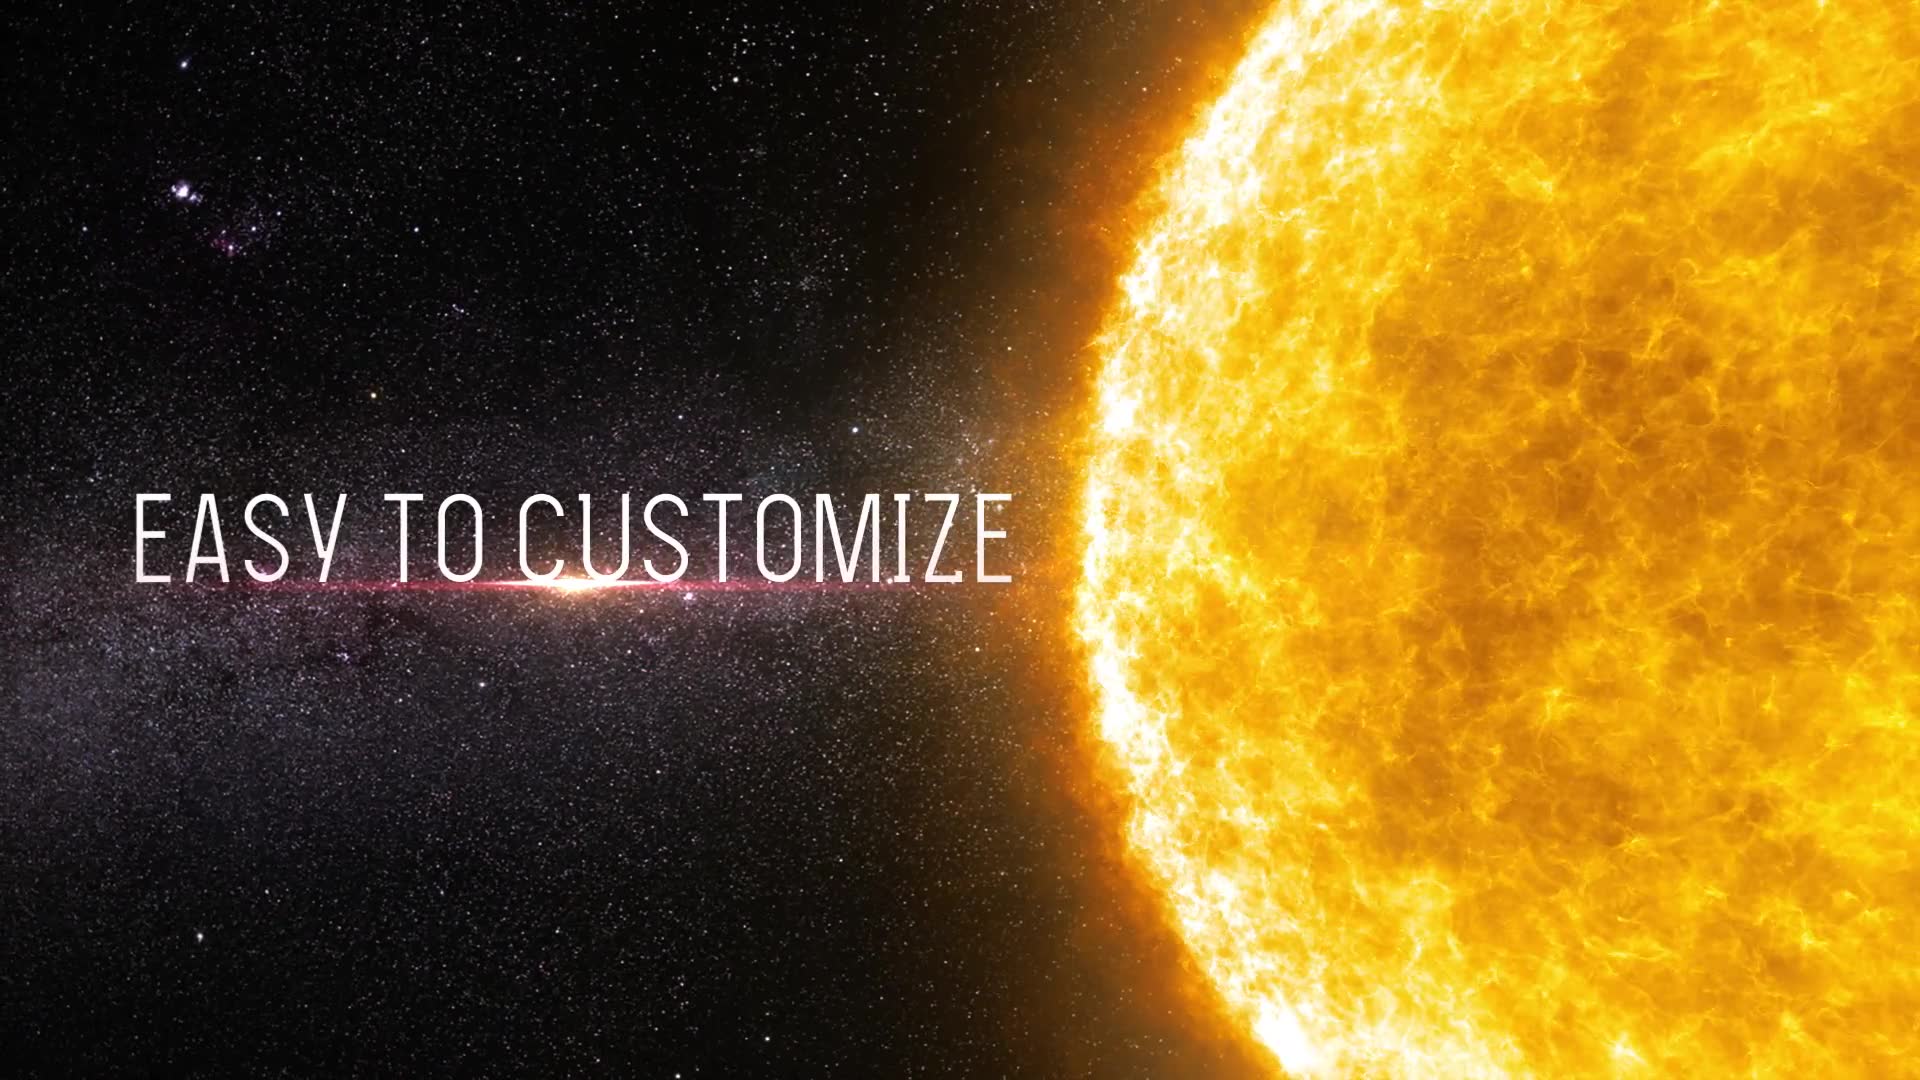 The Solar Cinematic Trailer Premiere Pro Videohive 24577336 Premiere Pro Image 6